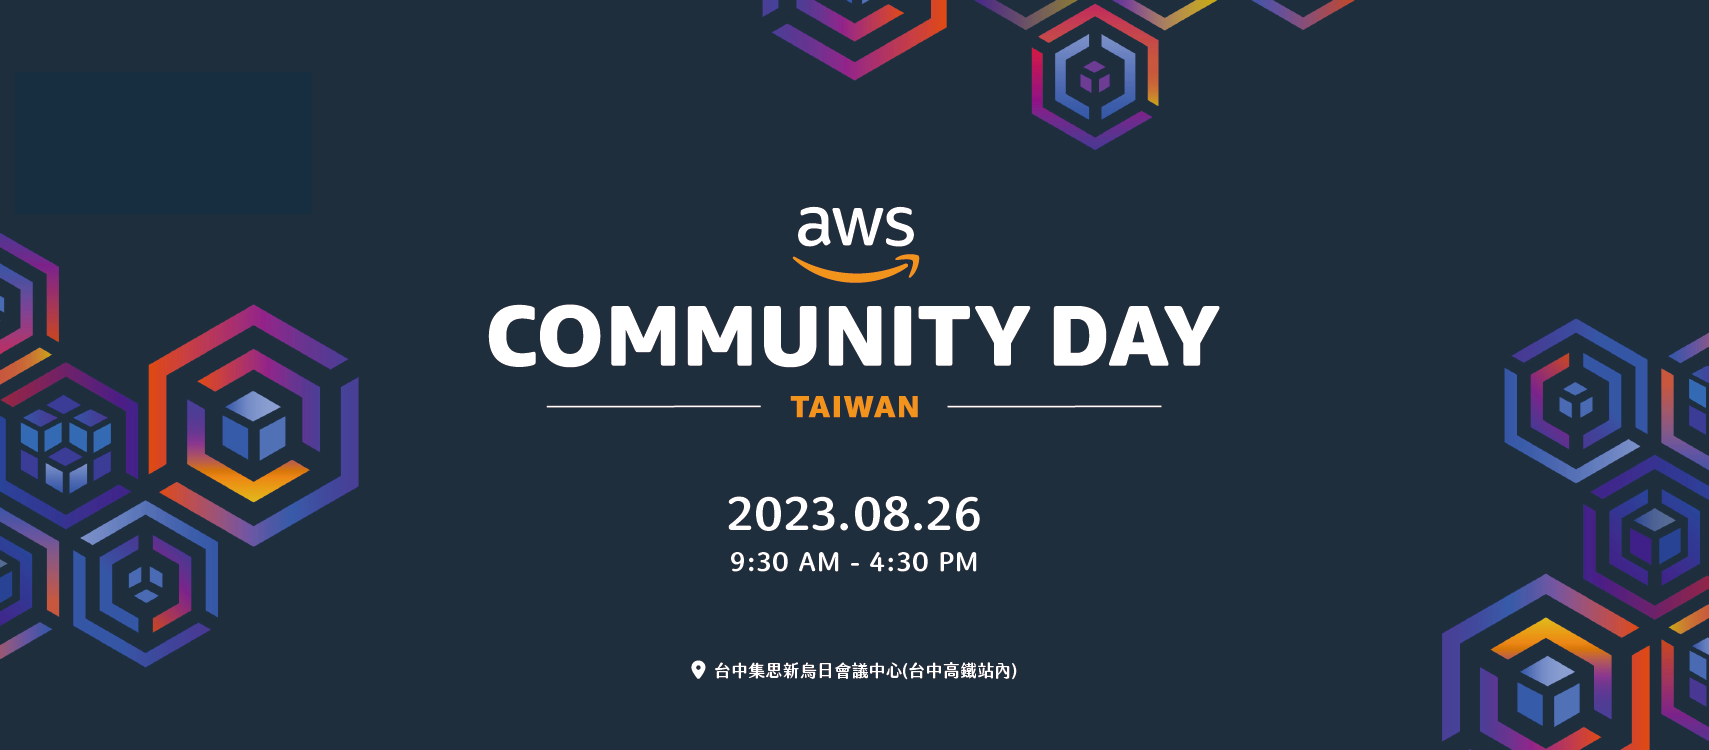 【雲端活動】專屬於 AWS 社群愛好者的年會 - 2023 AWS Community Day Taiwan